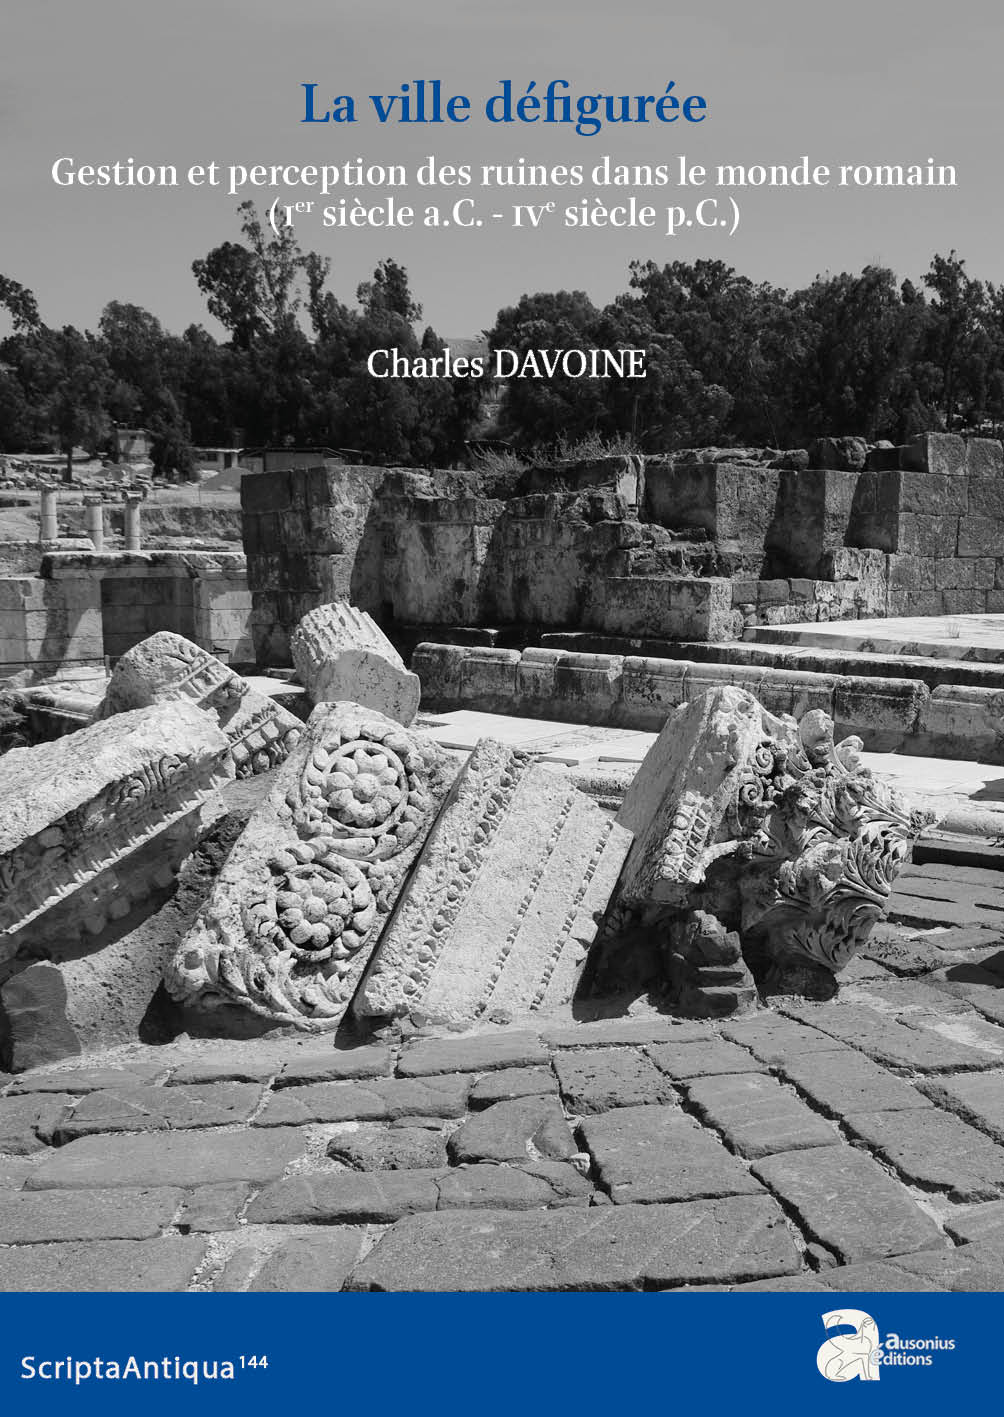 La ville défigurée. Gestion et perception des ruines dans le monde romain (Ier siècle a.C. - IVe siècle p.C.), 2021, 430 p.